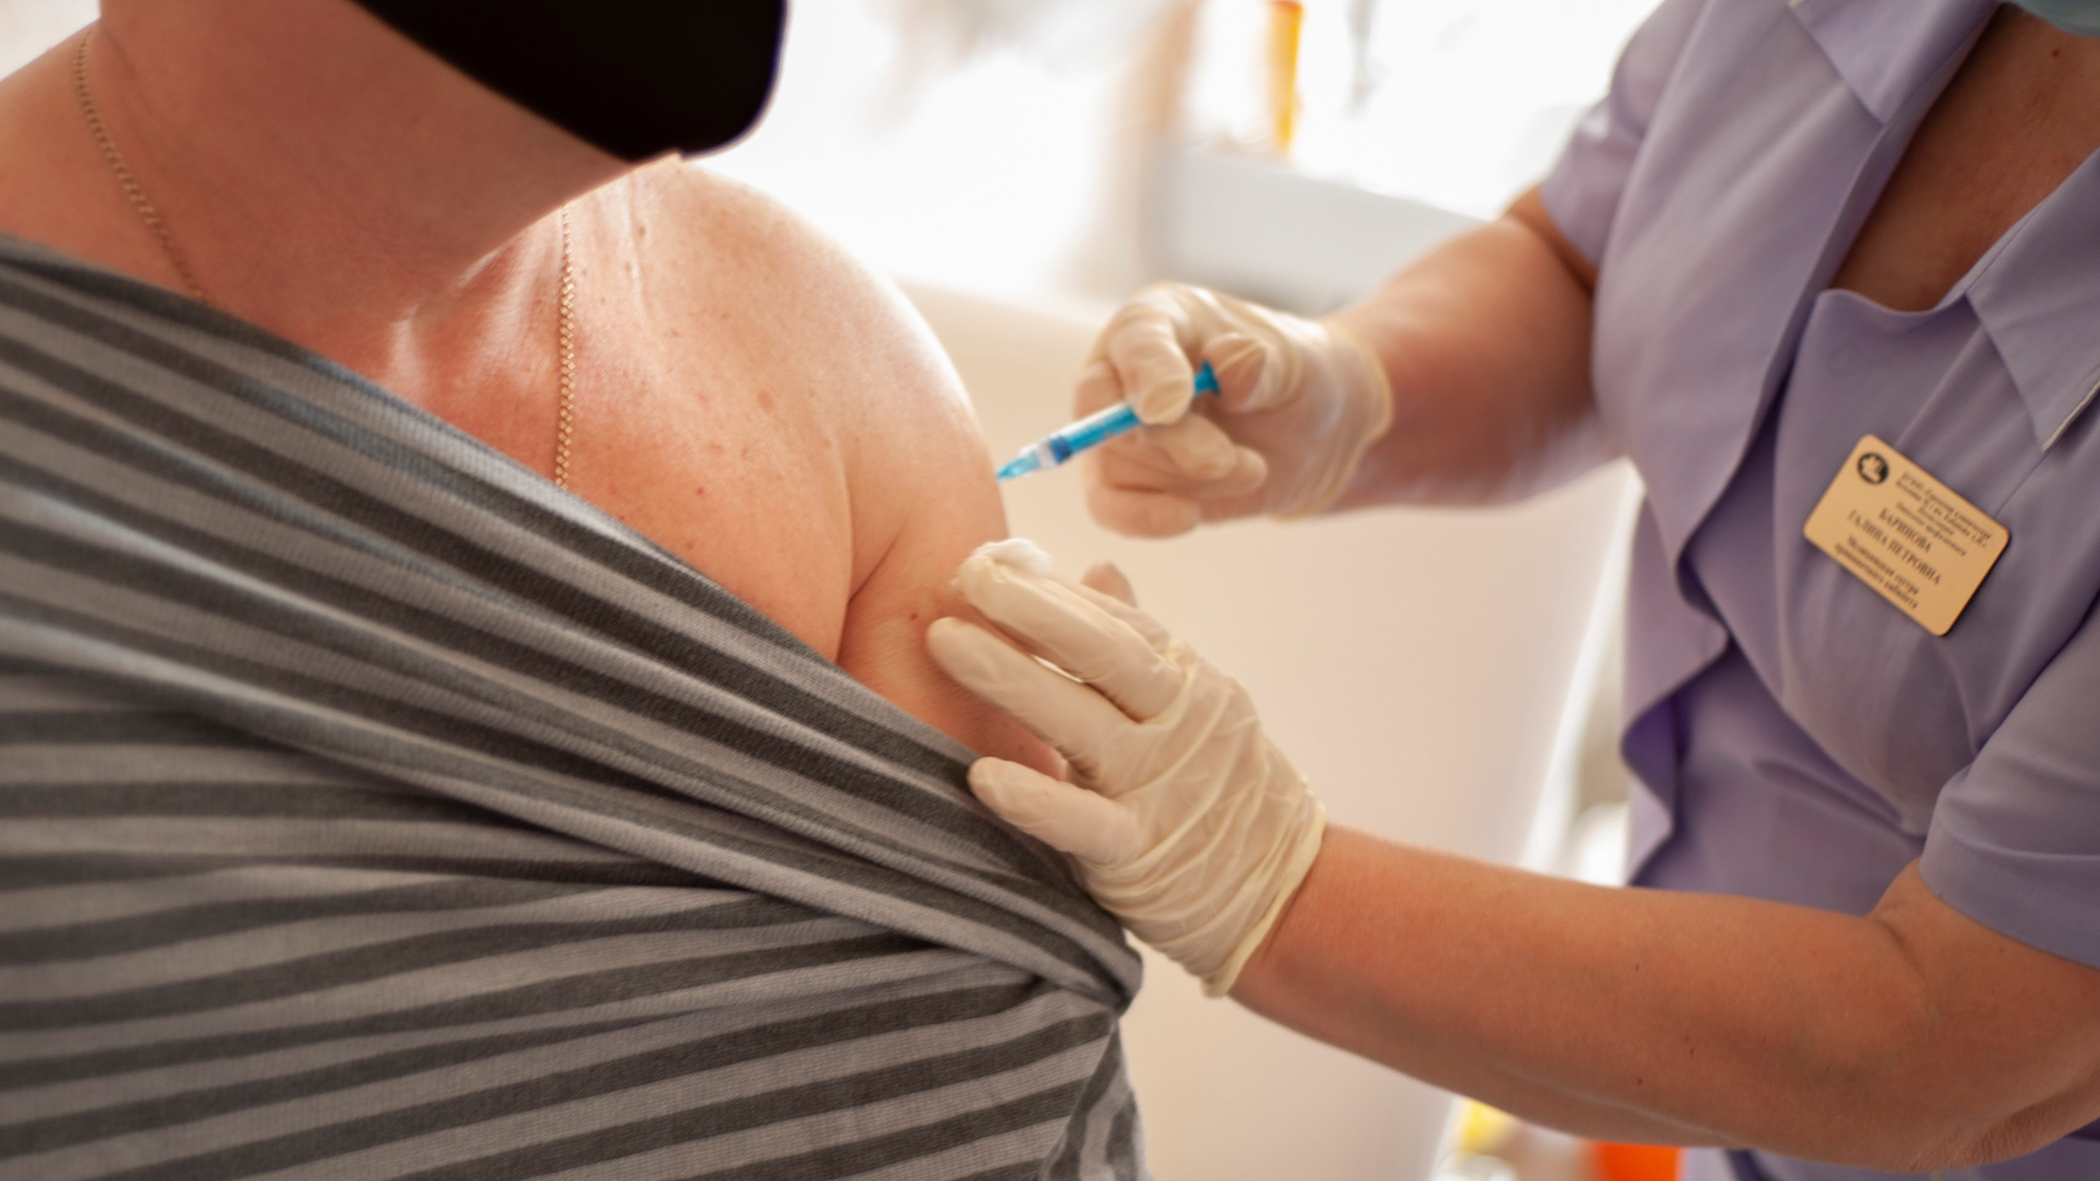 565 ижевчан поставили первую прививку от коронавируса в мобильном медкомплексе